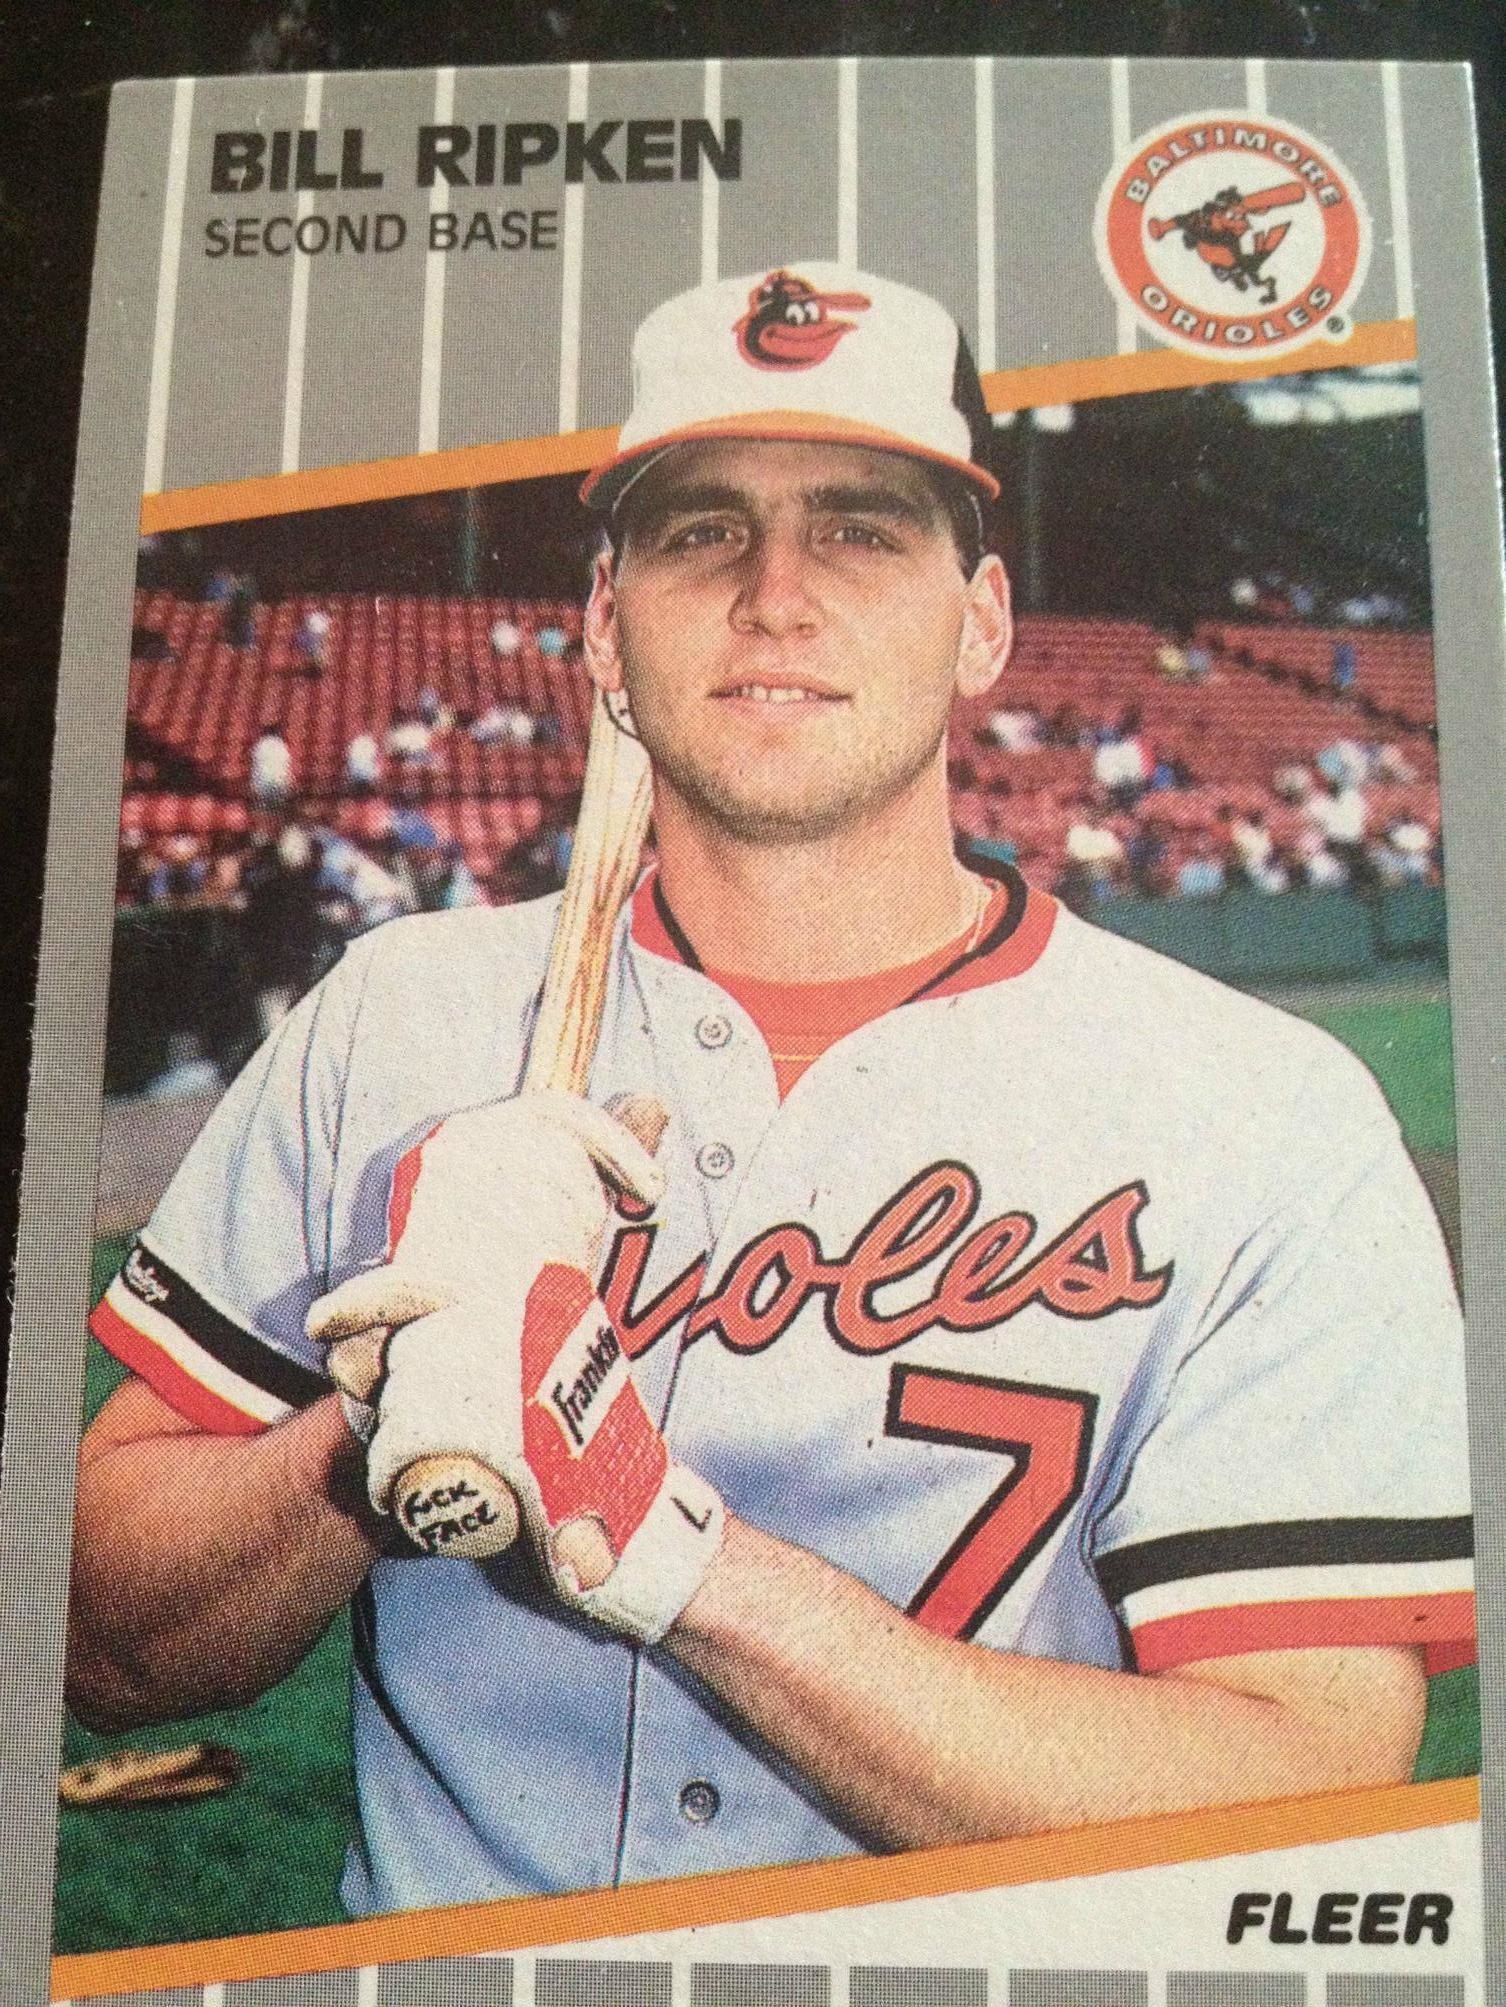 1989 fleer baseball card of billy ripken - Bill Ripken Second Base boer Fleer